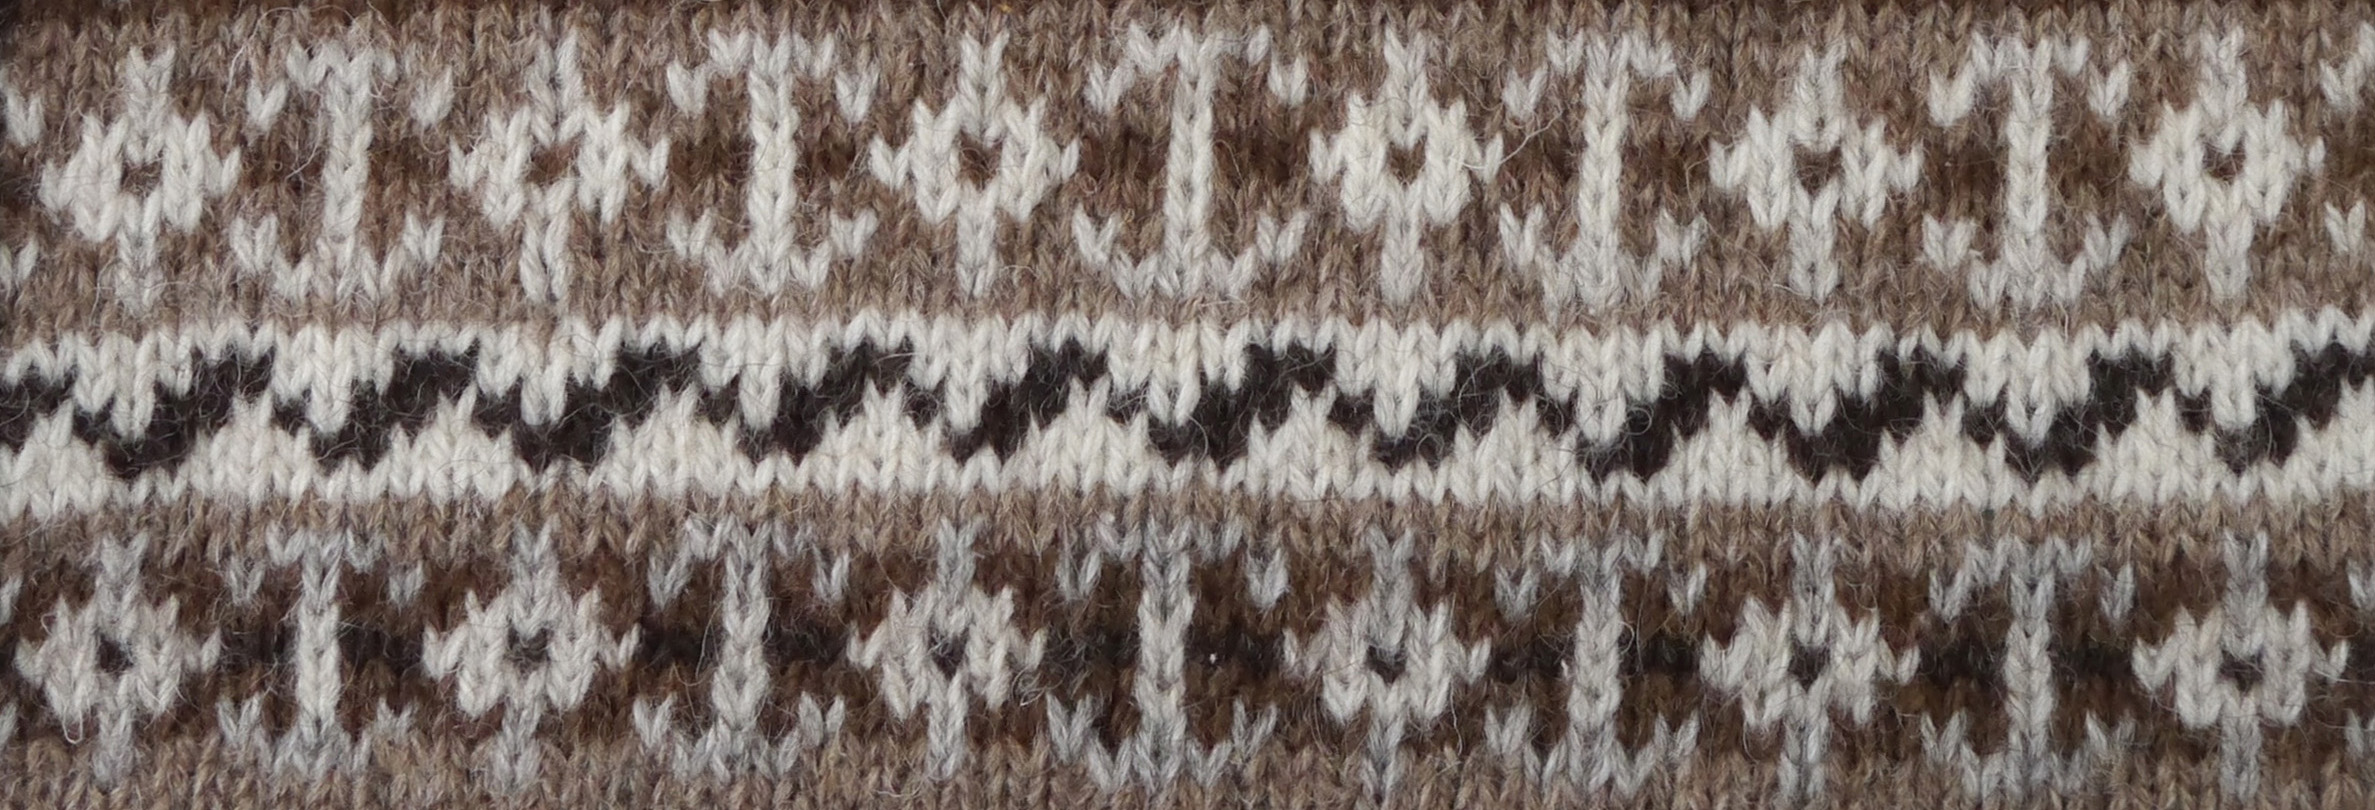 Foula Wool Knitting Pattern 4